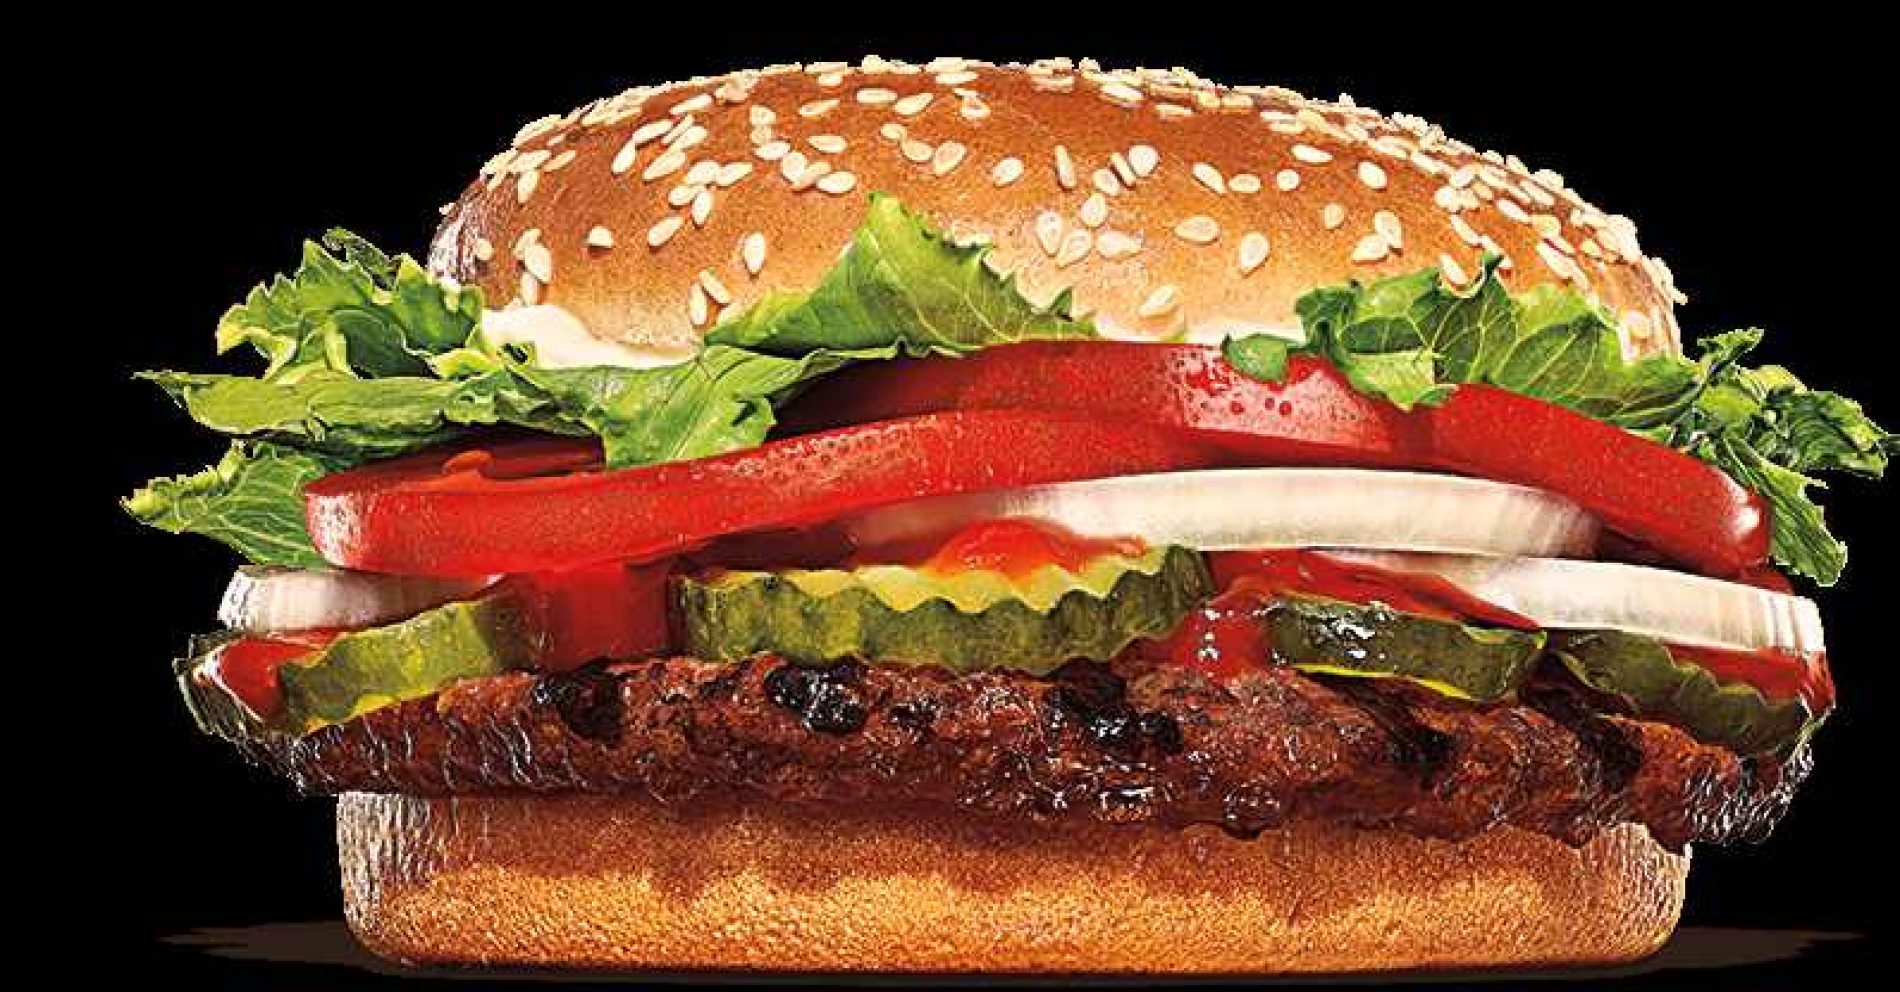 Un acto de fe: Burger King incluye una opción diferente además de la carne durante Semana Santa